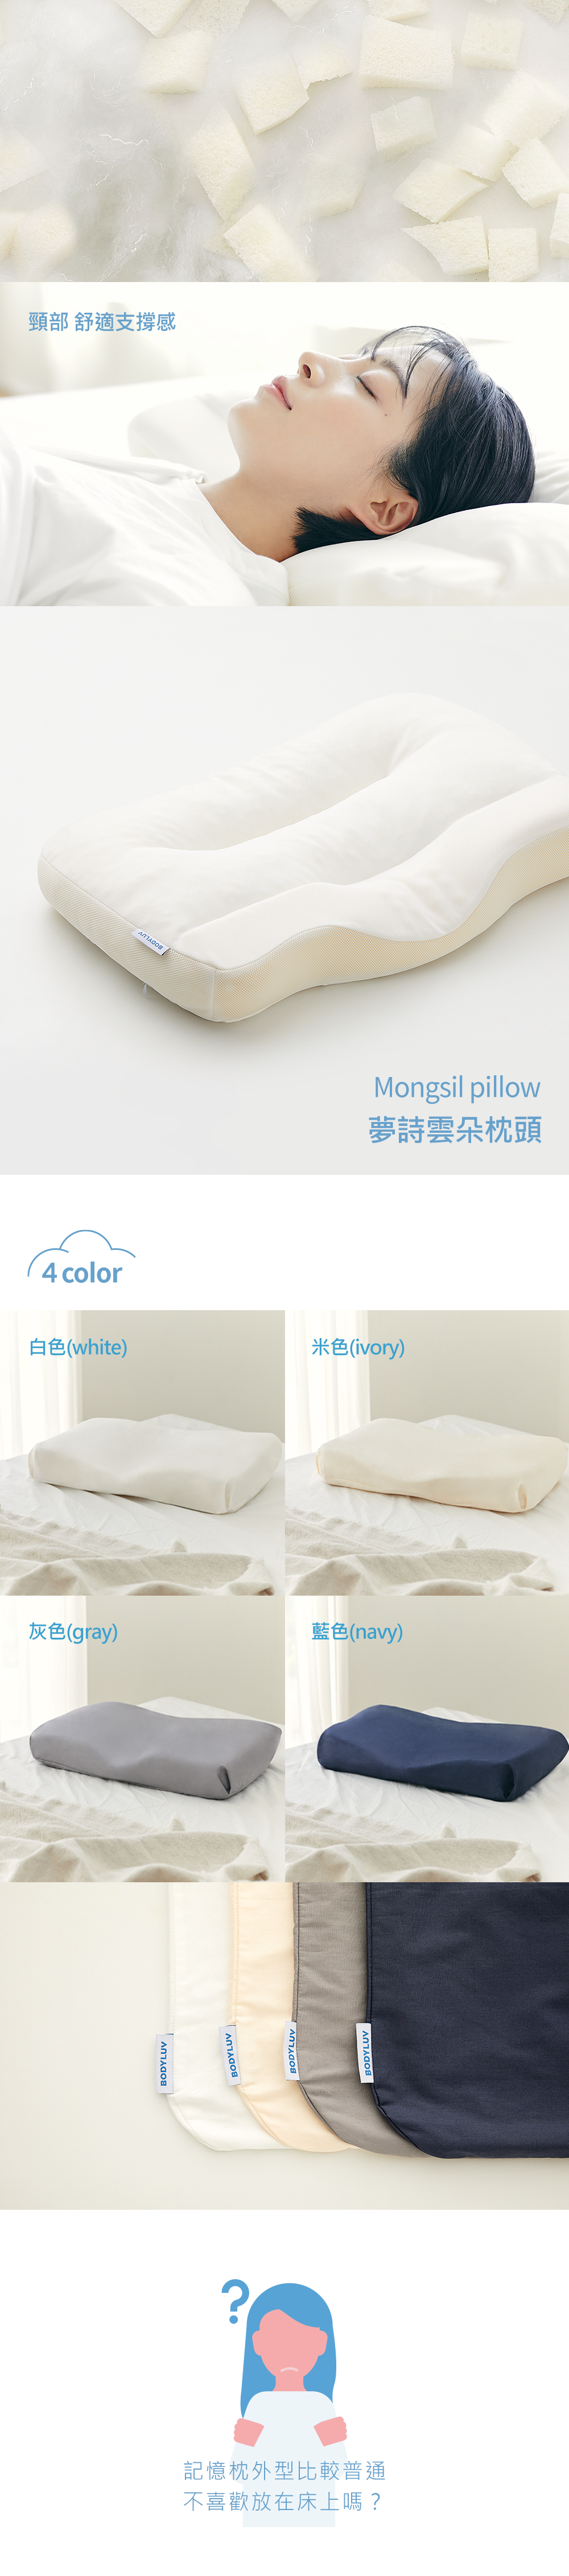 BODYLUV-韓國枕頭-pillow-枕頭好-麻藥枕